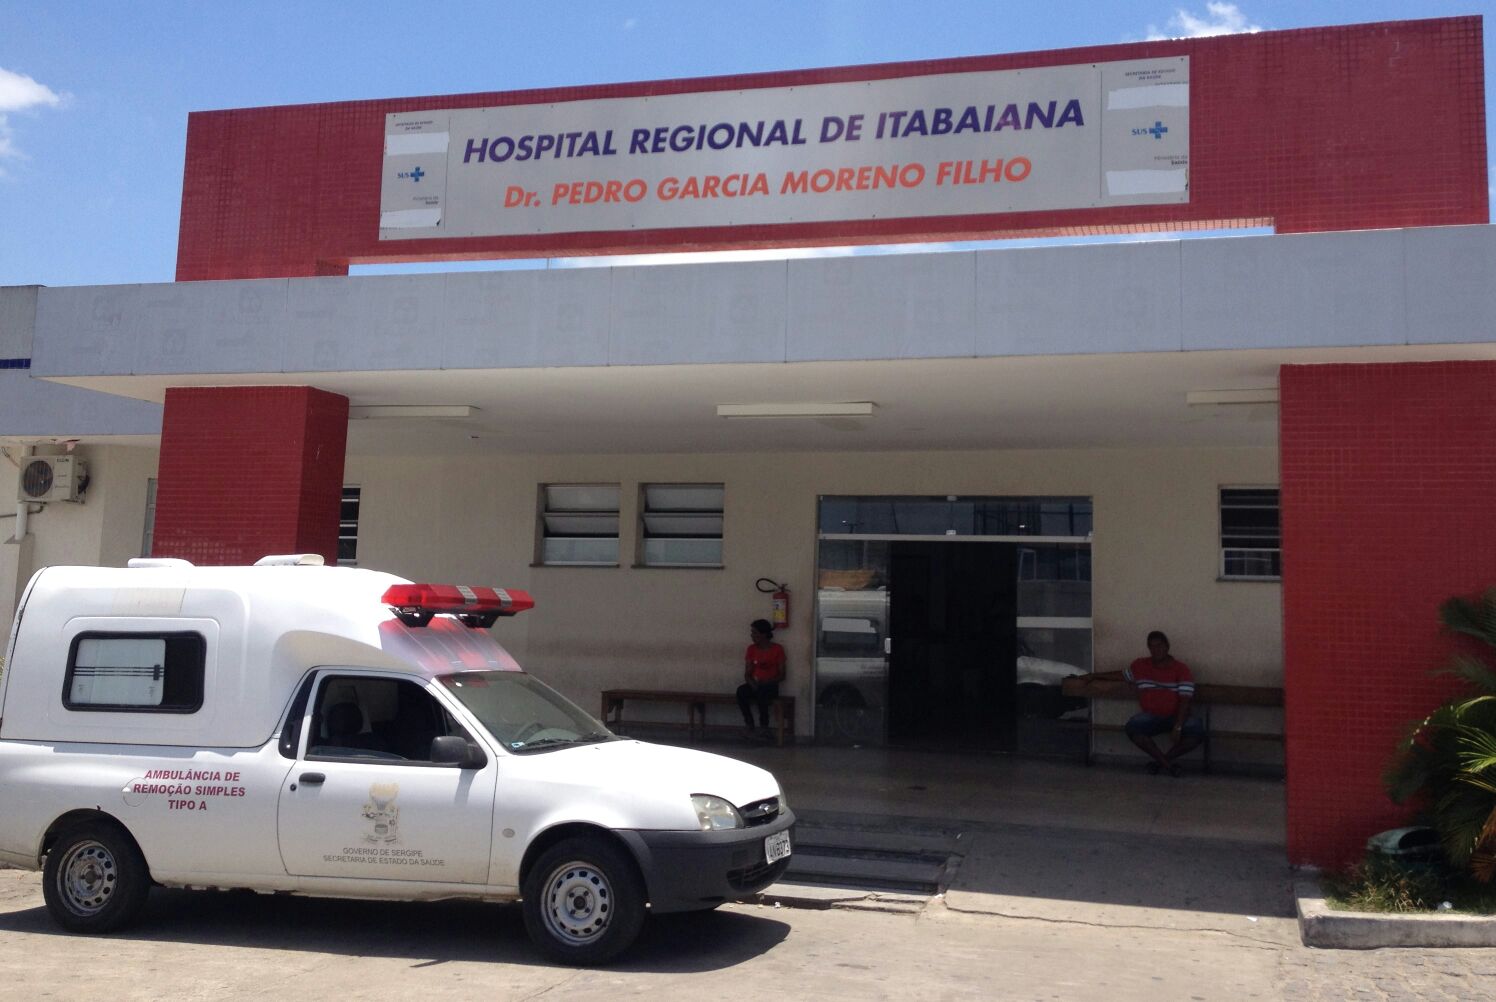 Um dos envolvidos no duplo homicídio em hospital de Itabaiana é preso